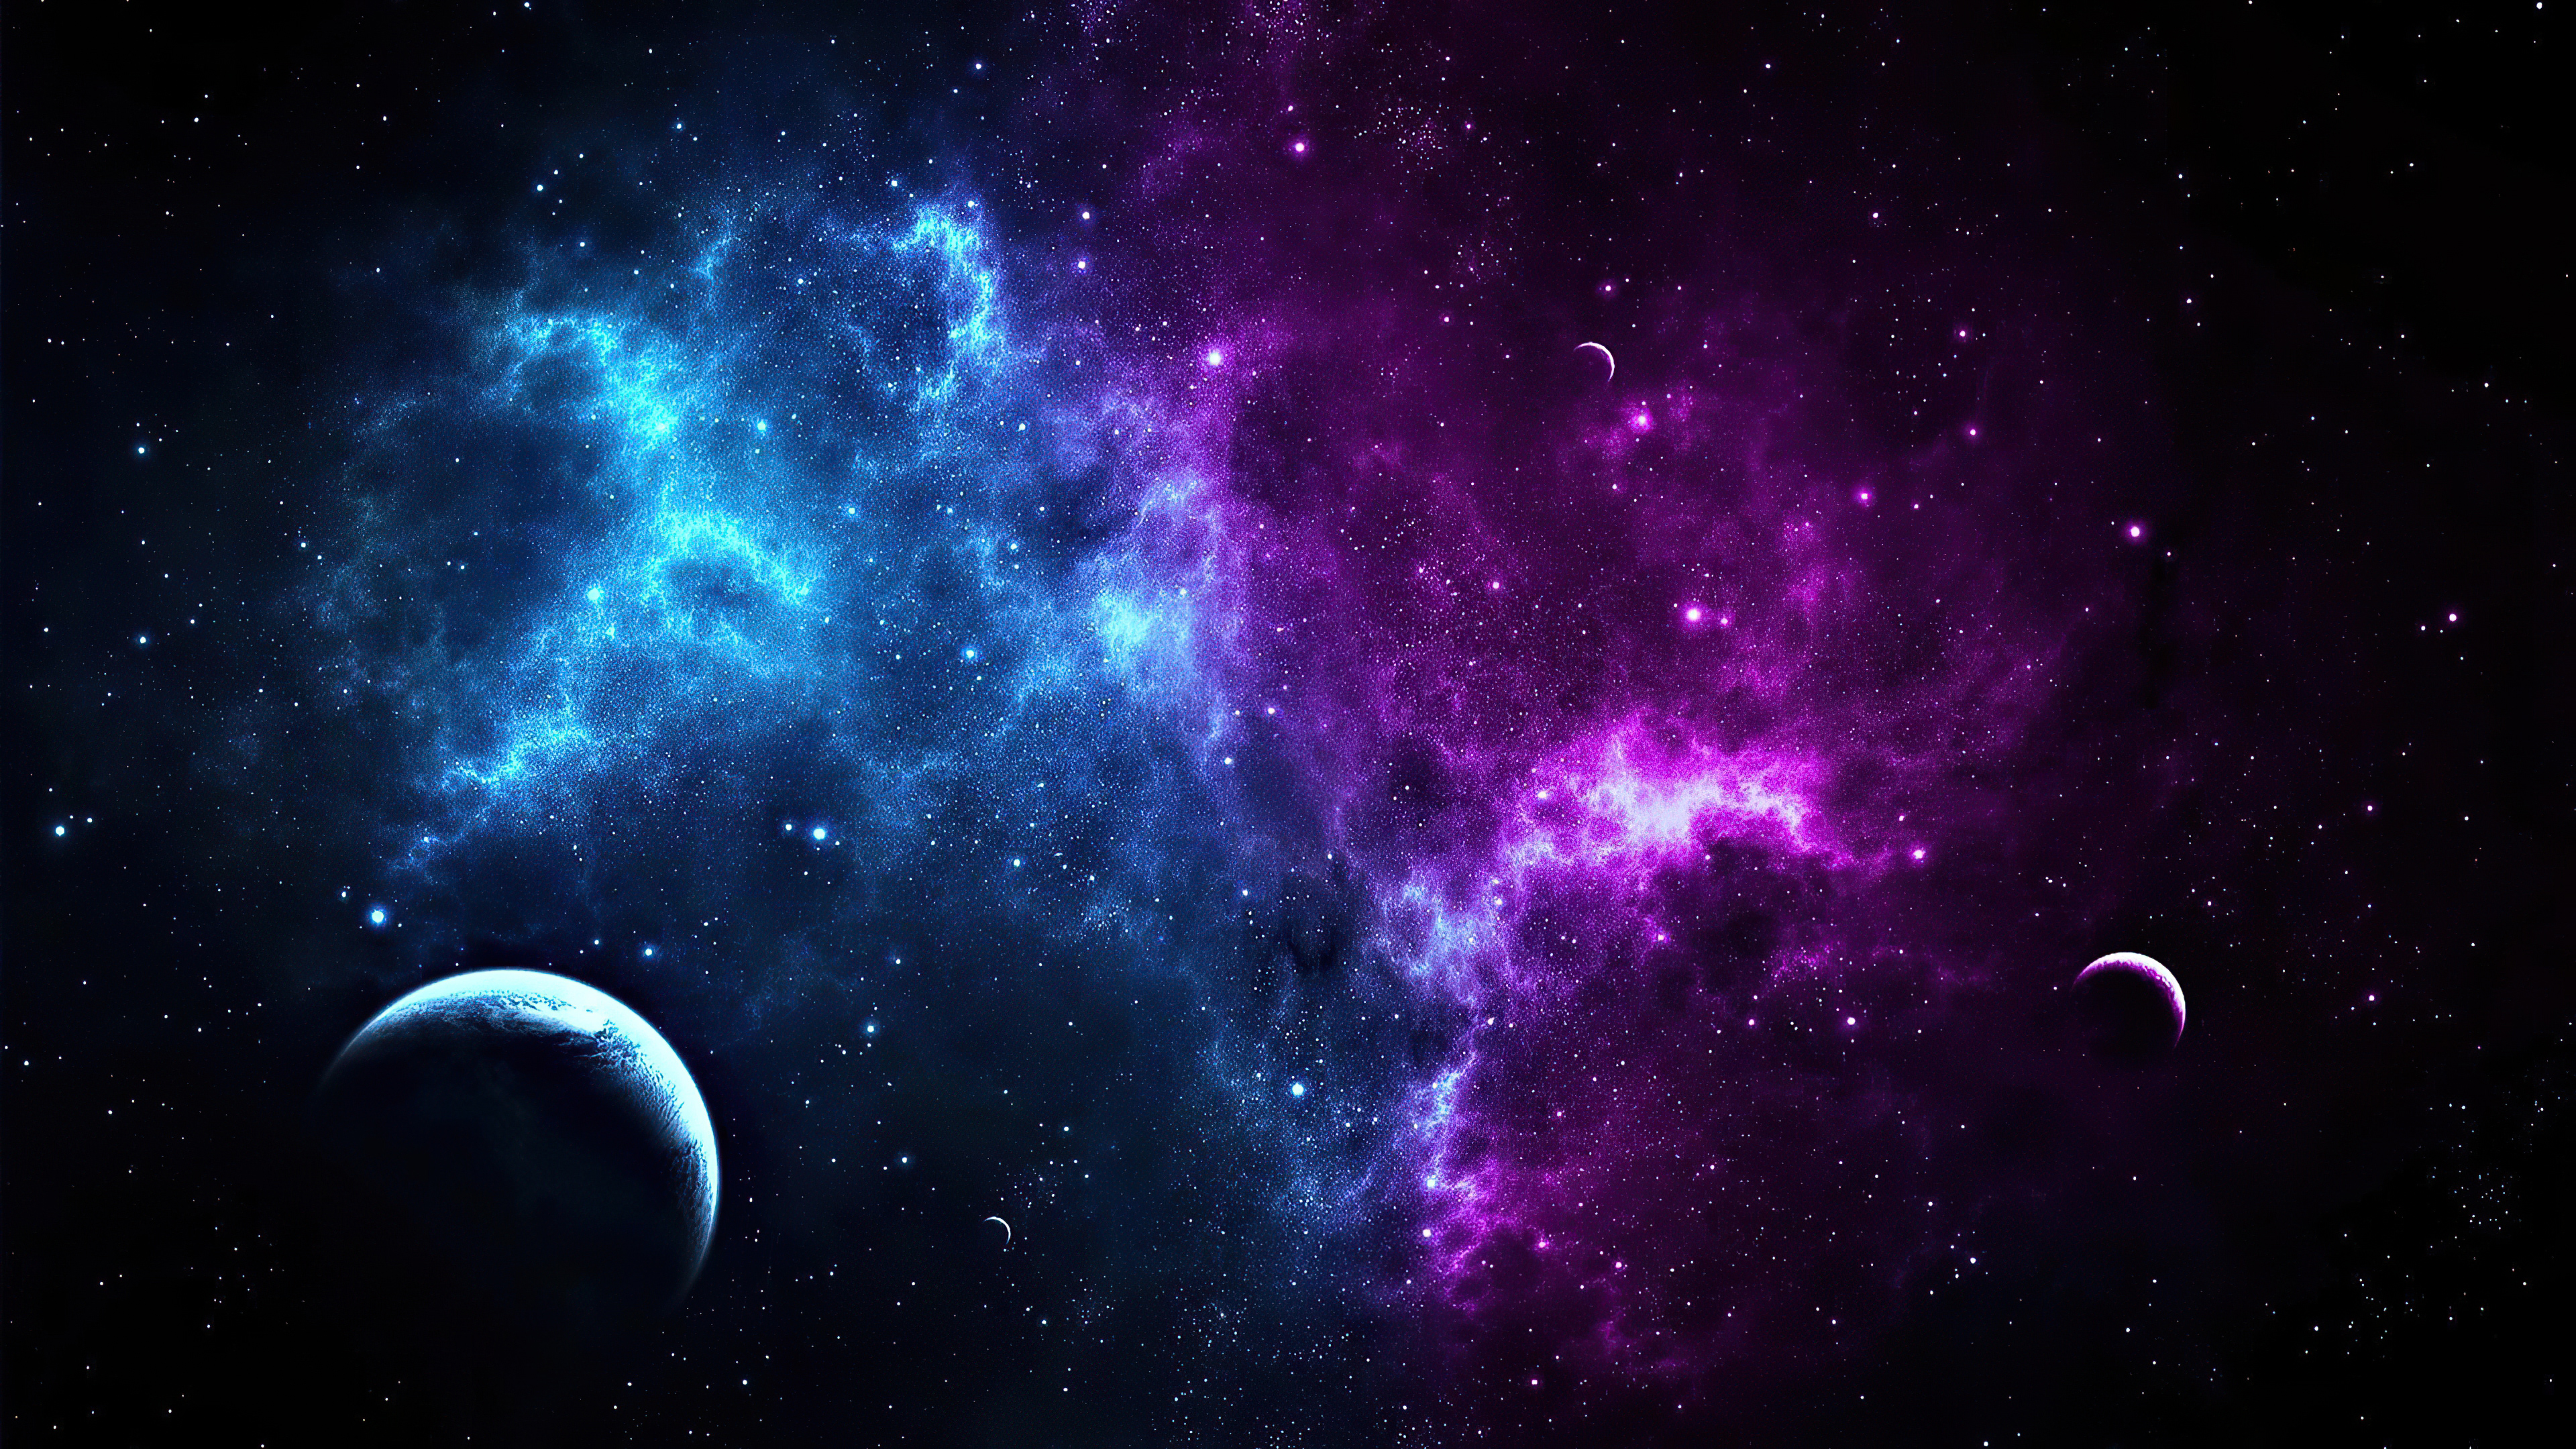 Vũ trụ đầy màu sắc thật là kì diệu và thú vị! Hãy đắm chìm vào không gian bao la, khám phá những hành tinh đầy màu sắc, chiêm ngưỡng những vệ tinh lấp lánh, hay thậm chí cả các thiên thạch tung bay rực rỡ. Hãy tận hưởng những hình ảnh tuyệt đẹp này để khơi dậy chút cảm xúc trong cuộc sống.